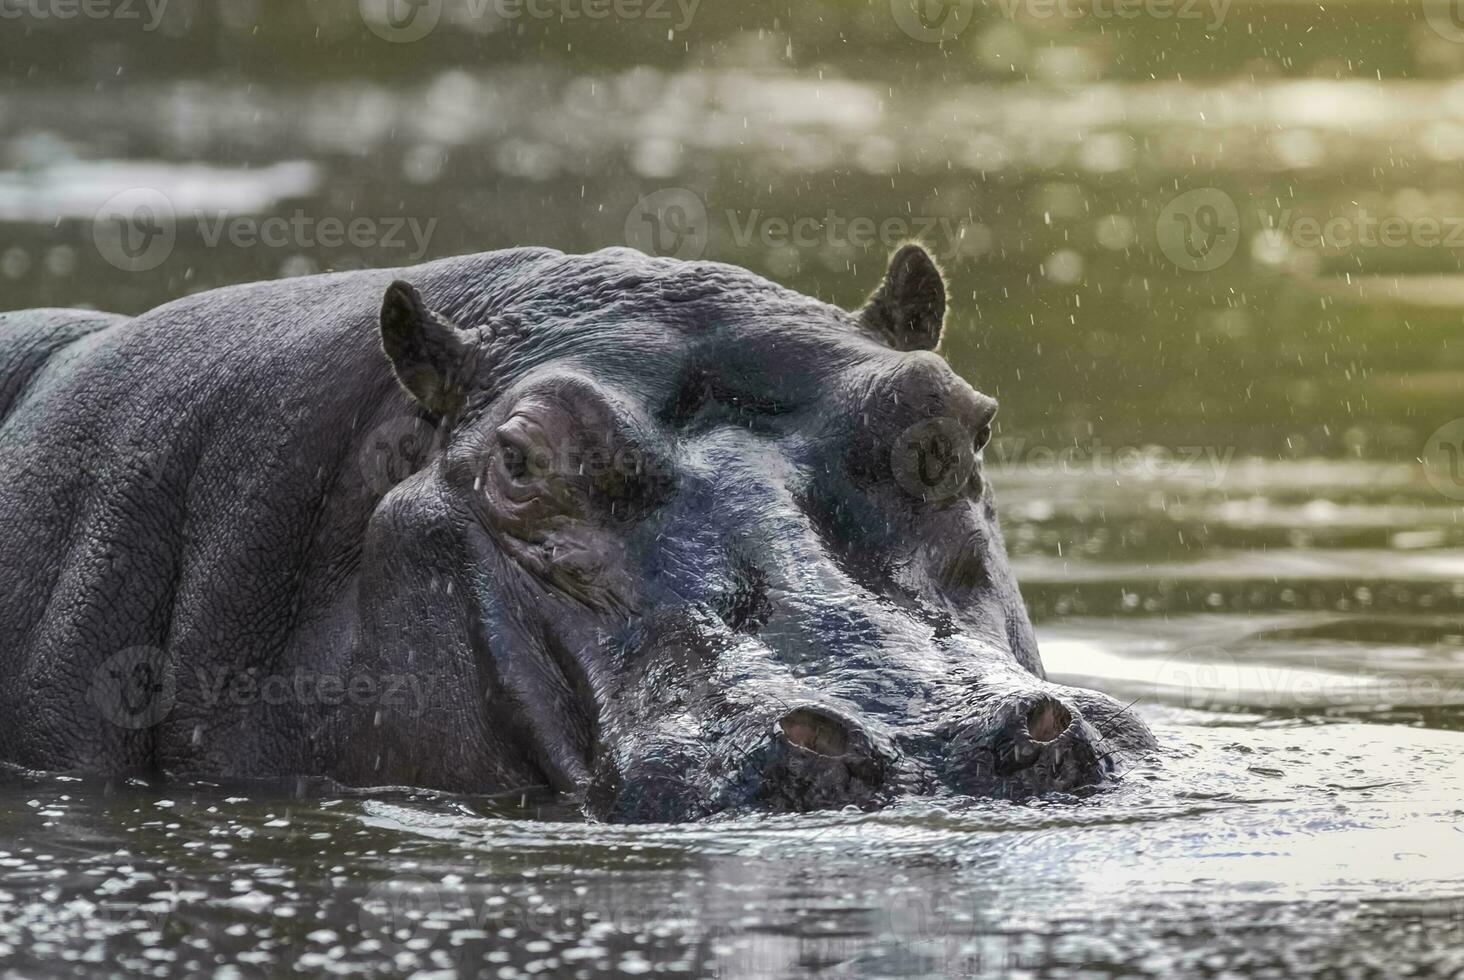 Afrikaanse nijlpaard, zuiden Afrika, in Woud milieu foto